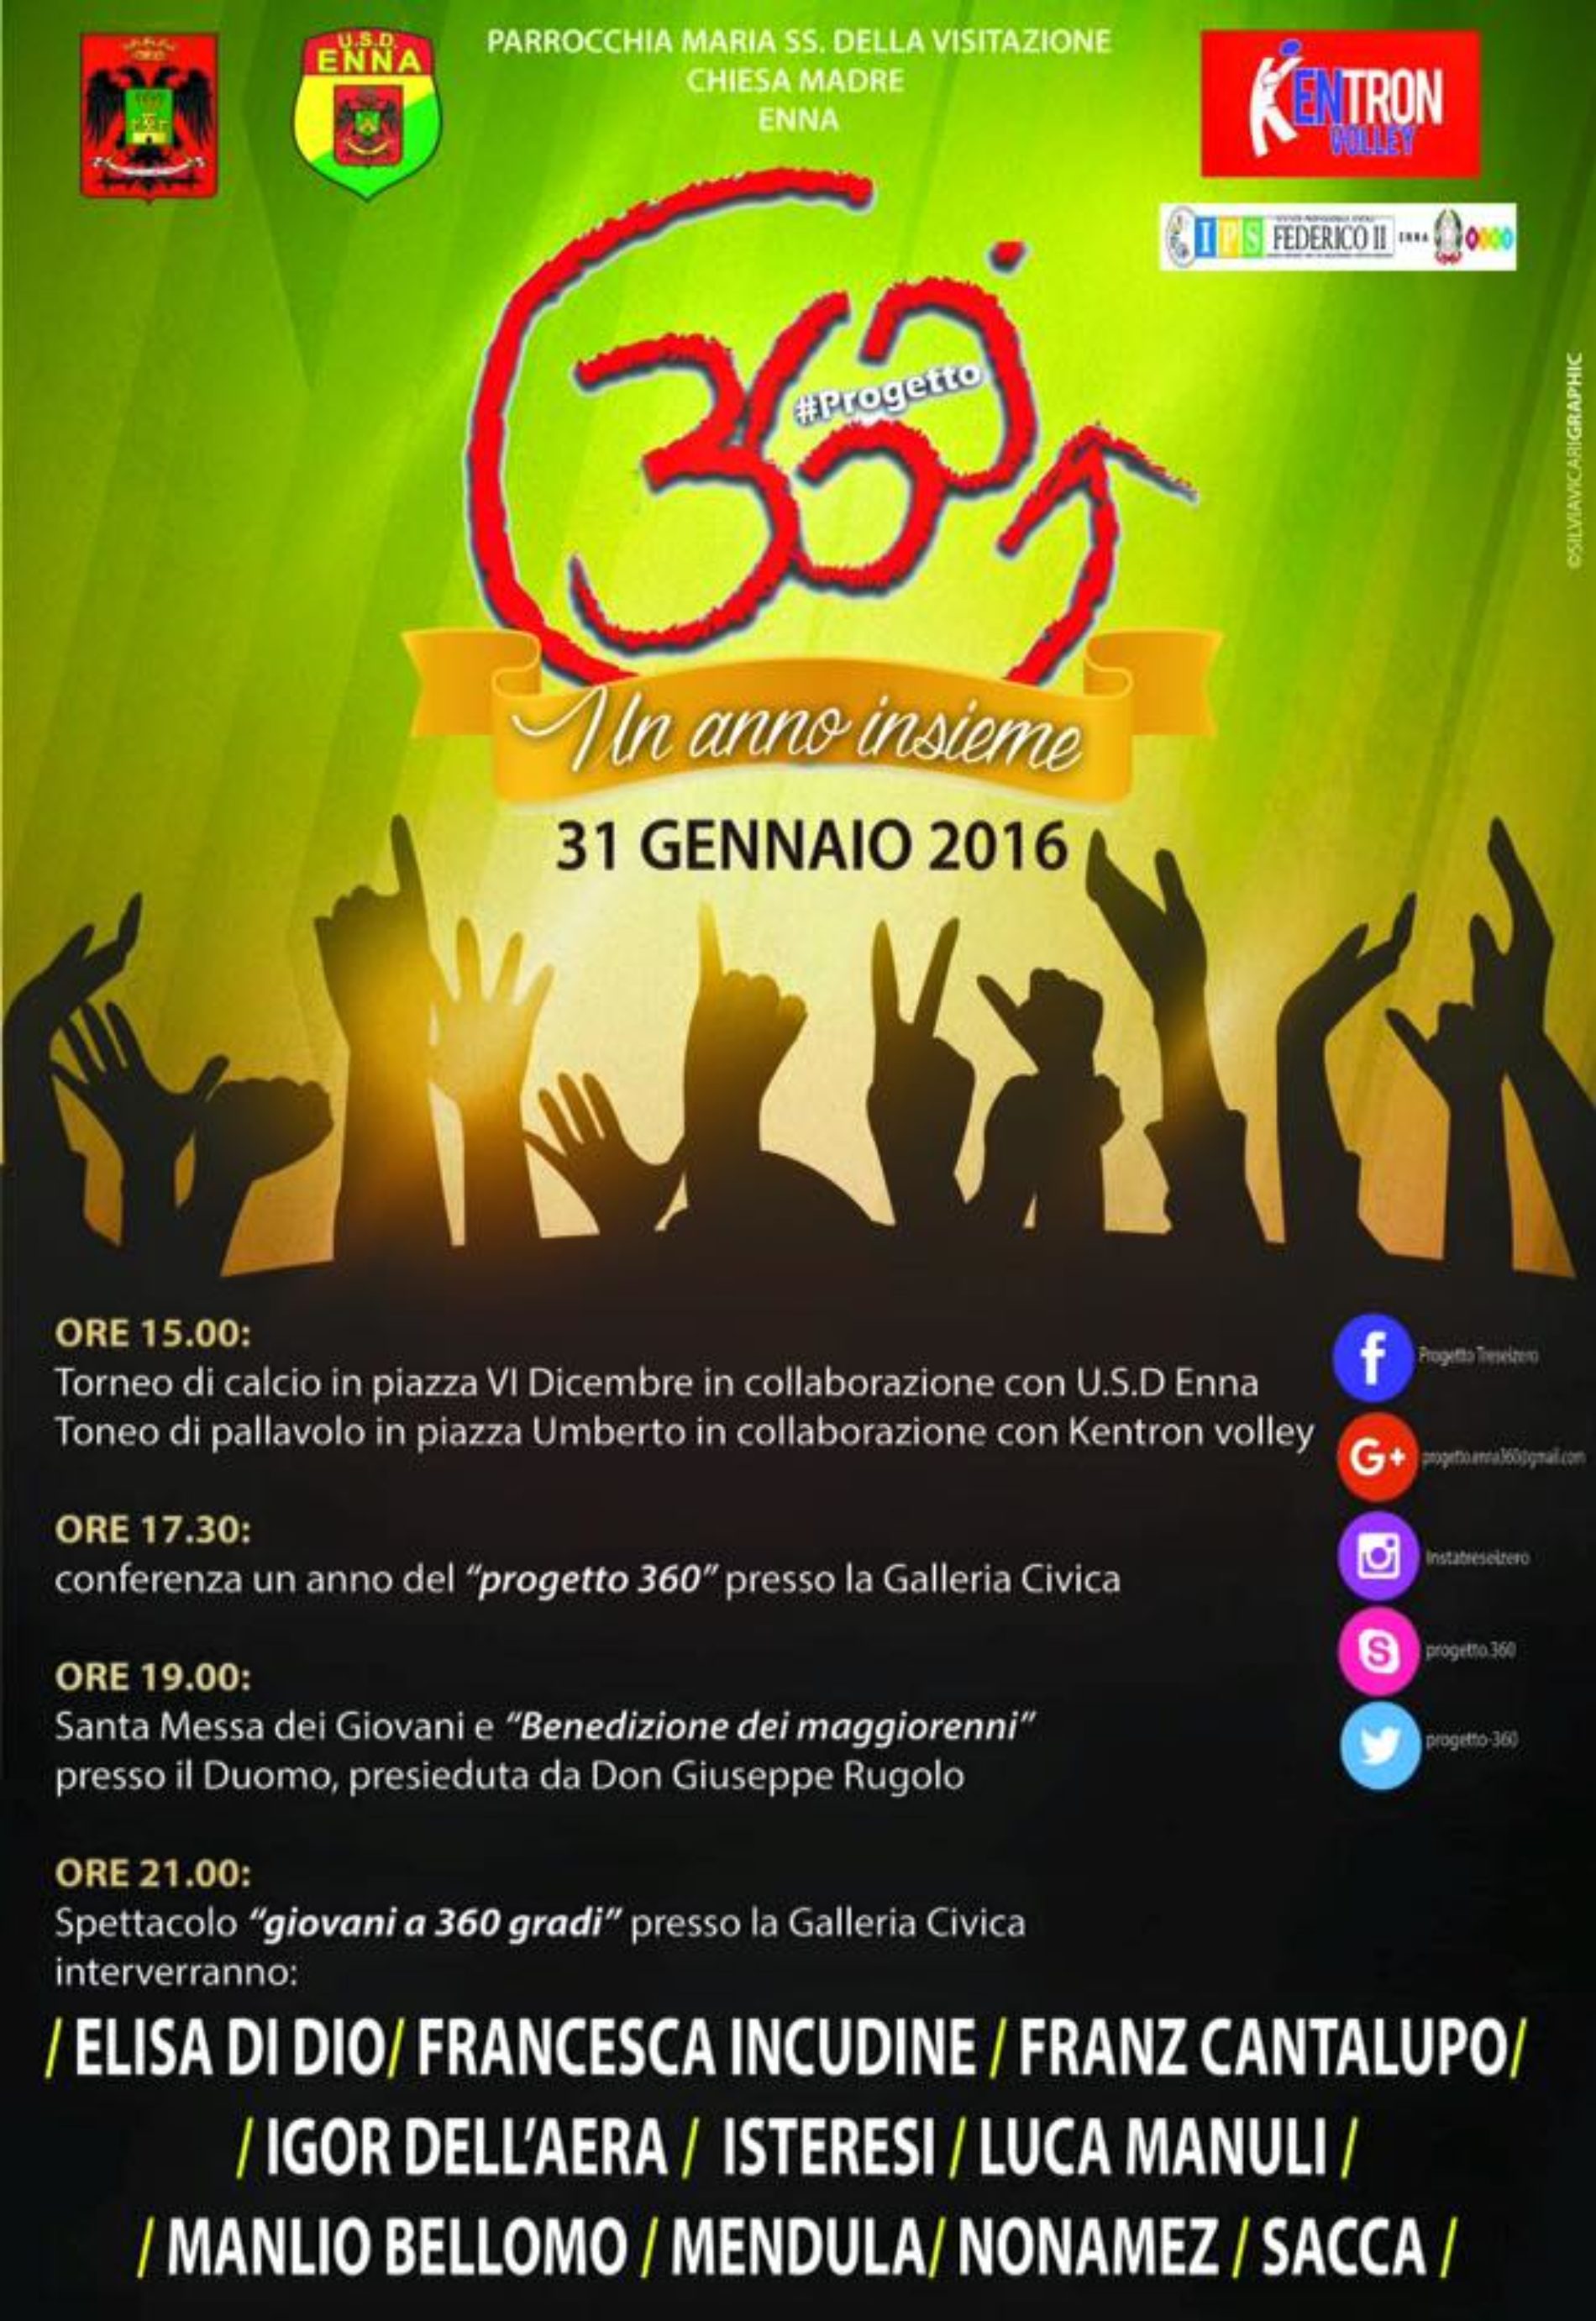 Tanti giovani e attività ad Enna per il “Progetto 360” nel giorno della ricorrenza del santo protettore dei giovani